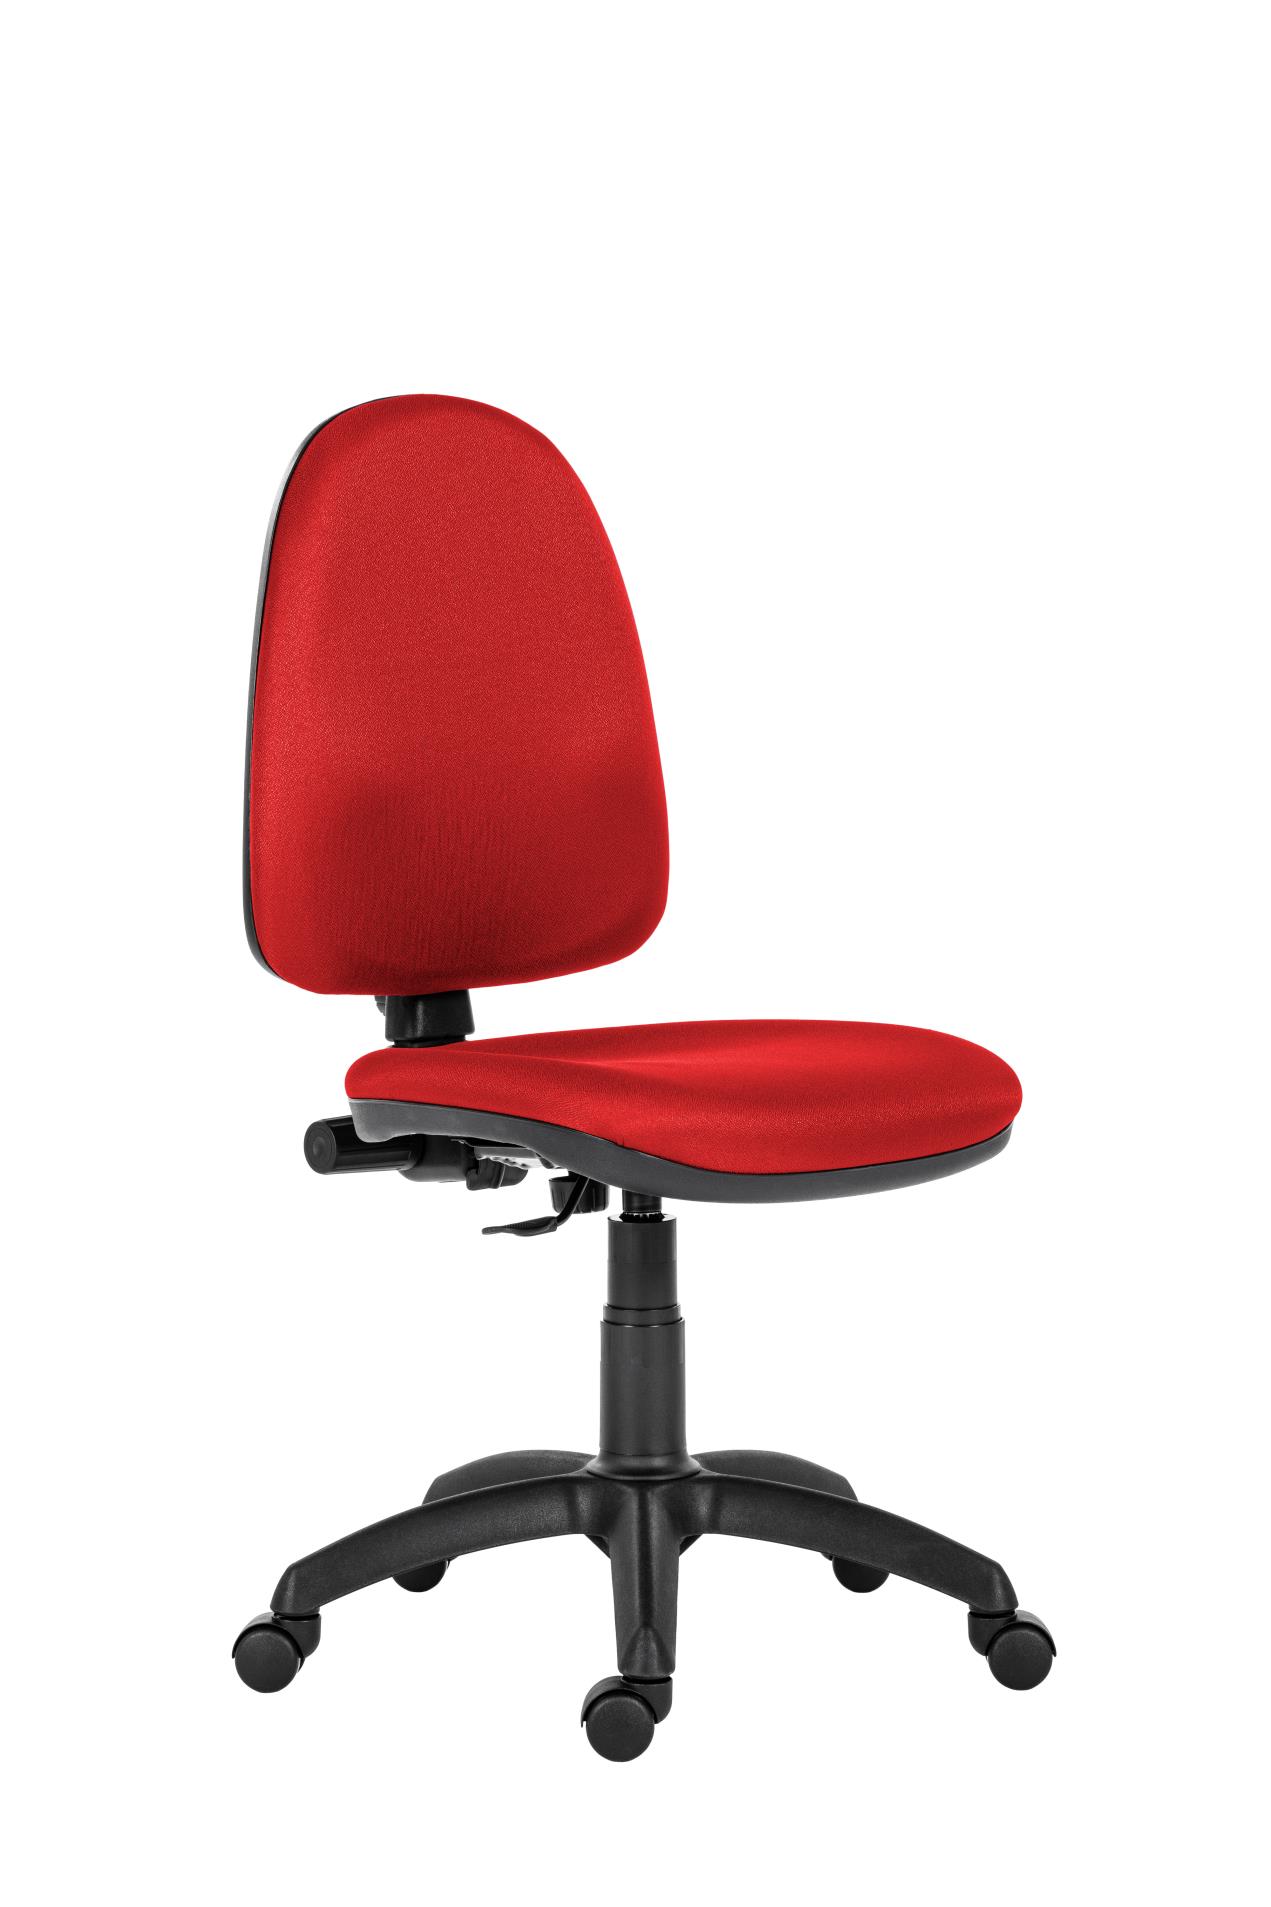 Antares Kancelářská židle Torino - červená